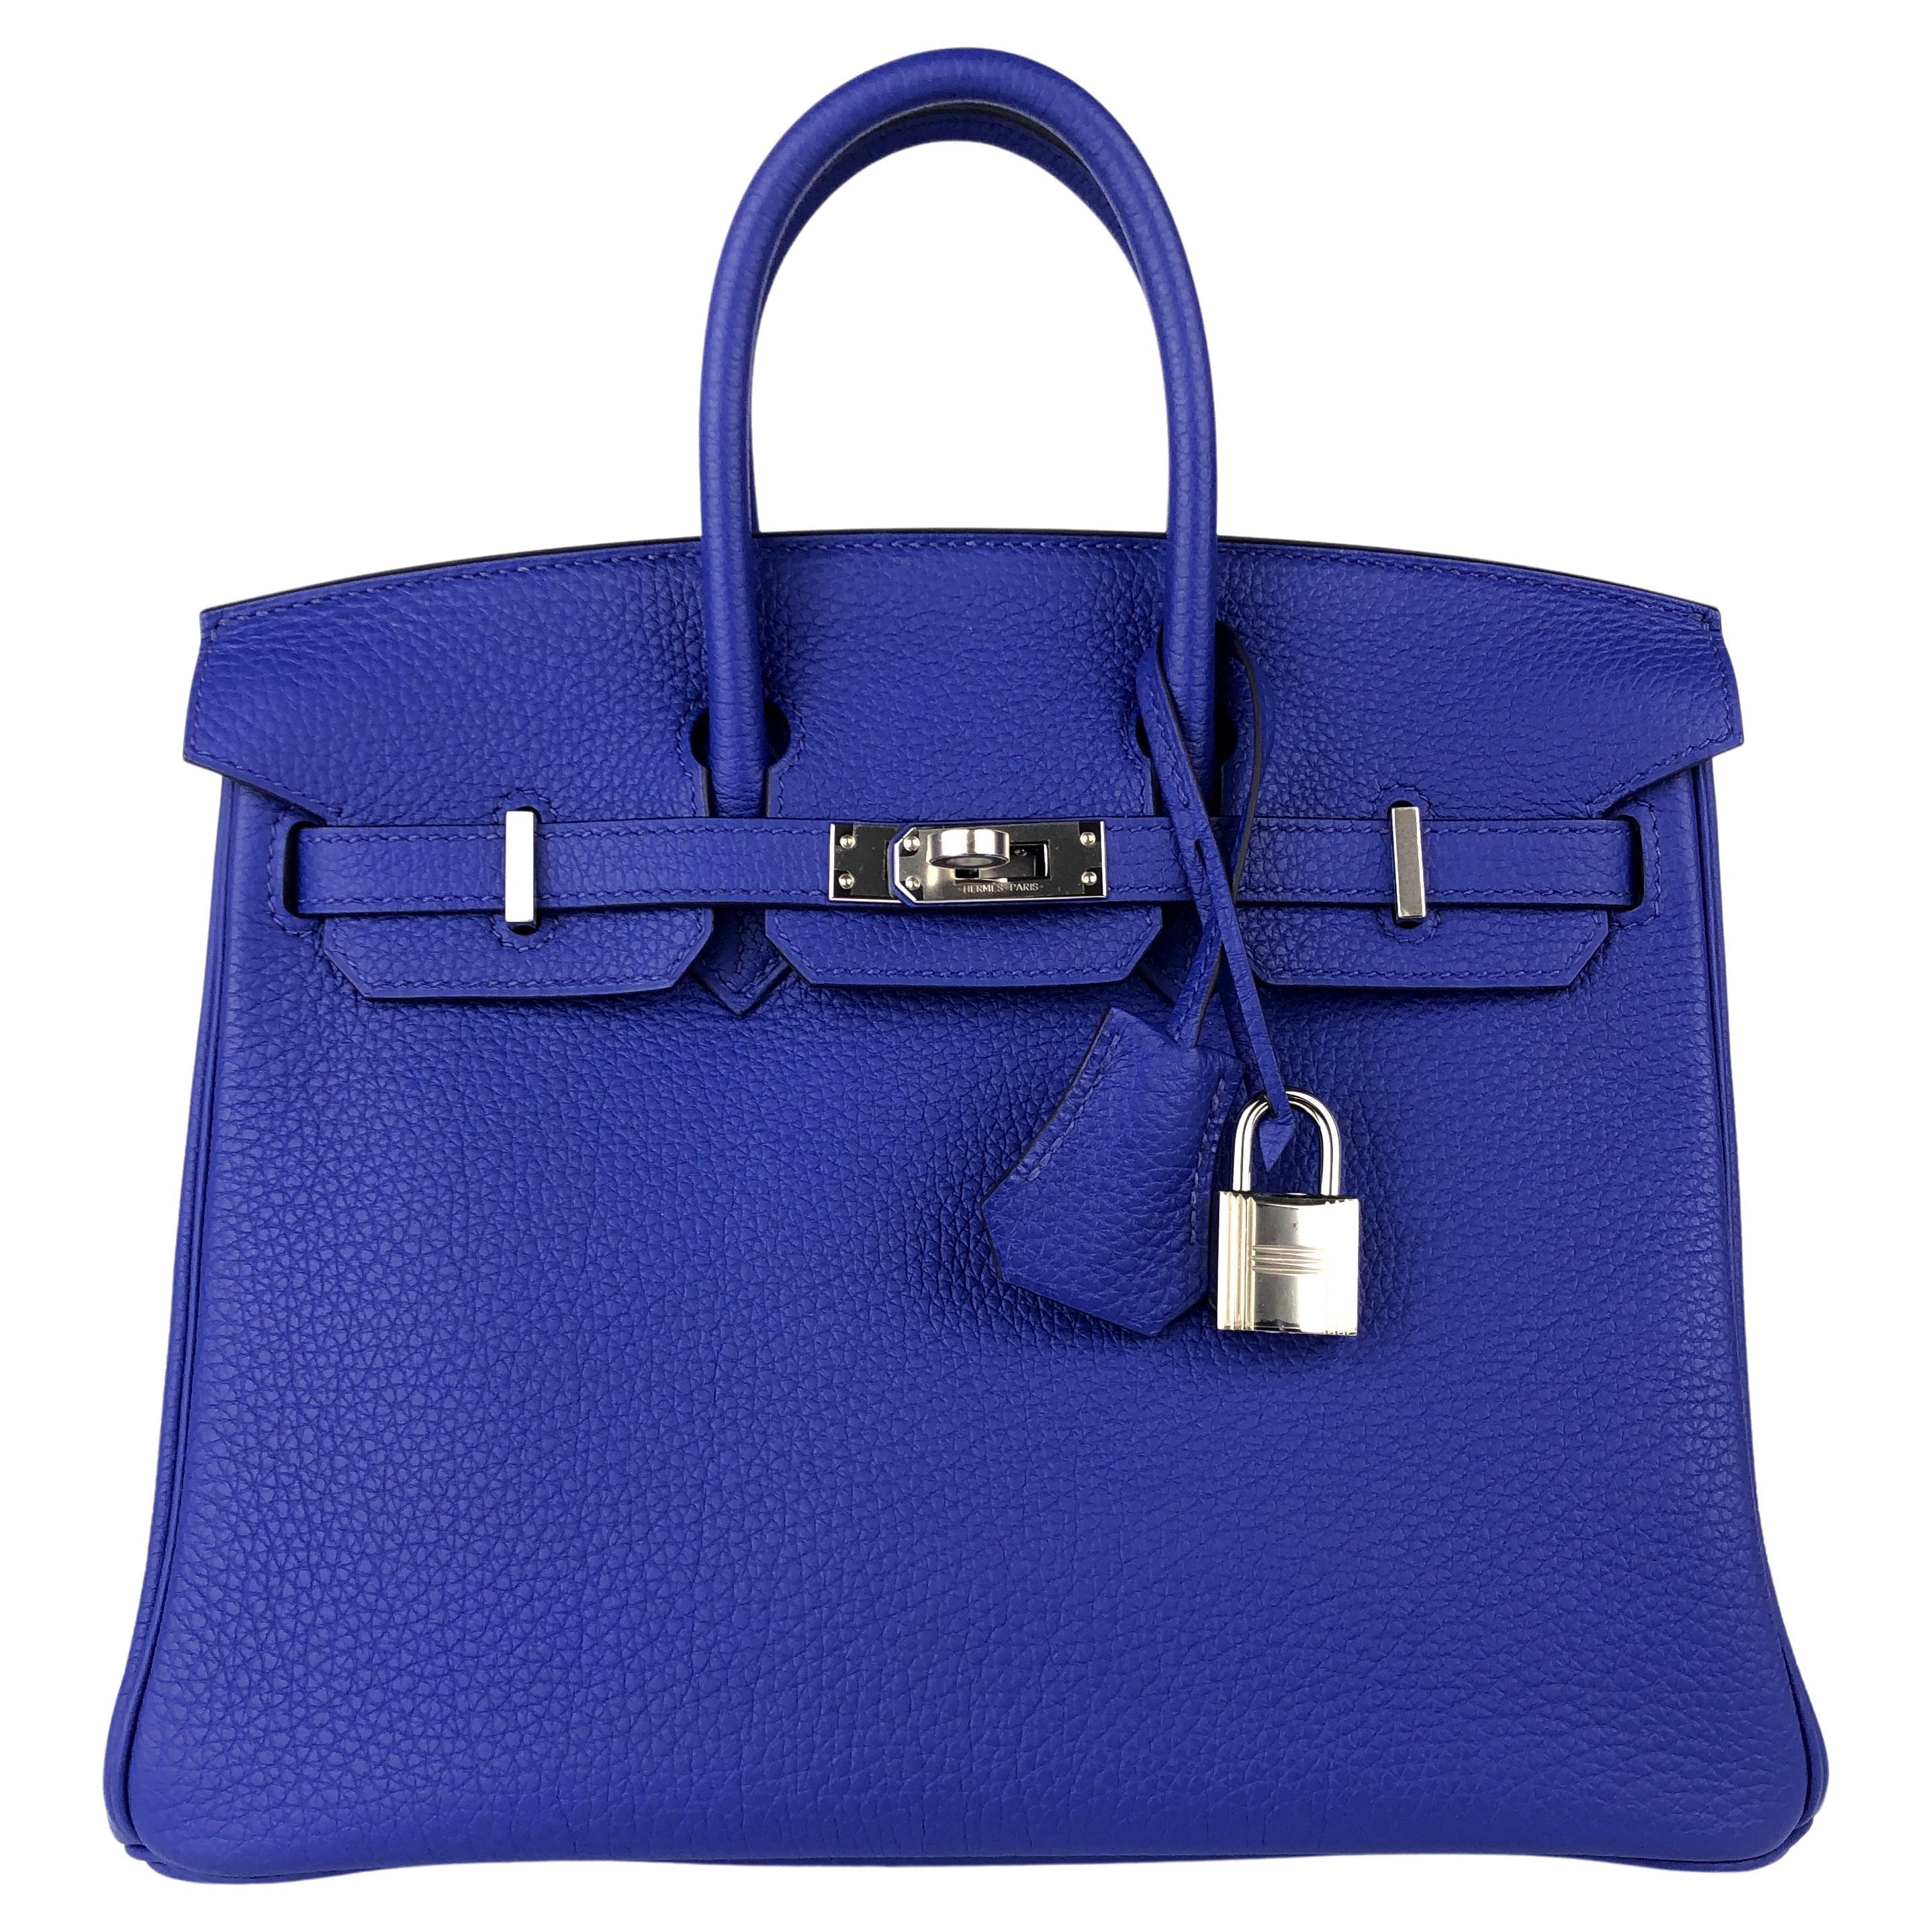 Hermes Birkin Royal Blue - 2 For Sale on 1stDibs  royal blue birkin, hermes  royal blue, royal blue birkin bag